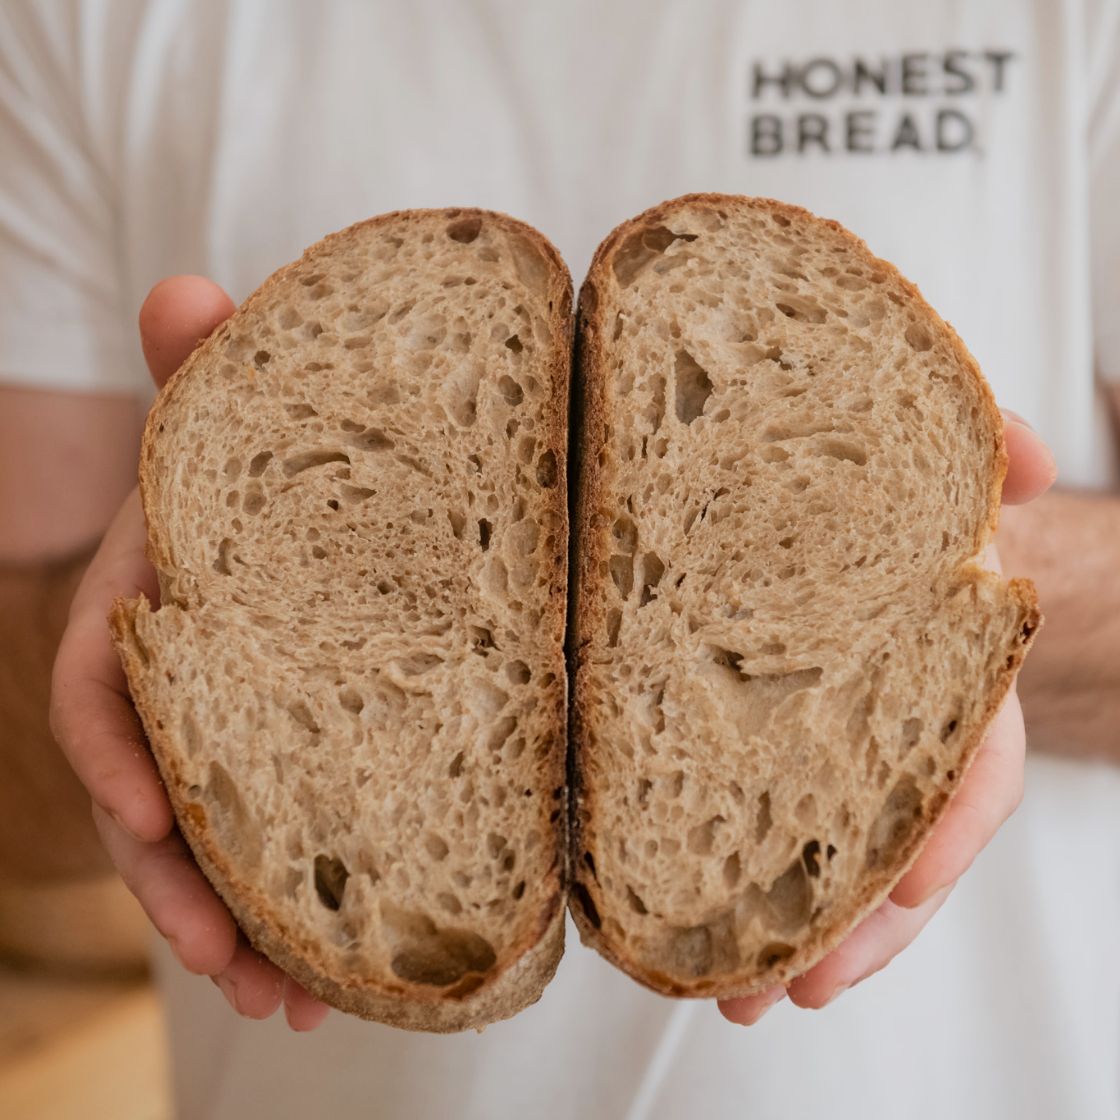 Honest Bread Bakery Nicosia